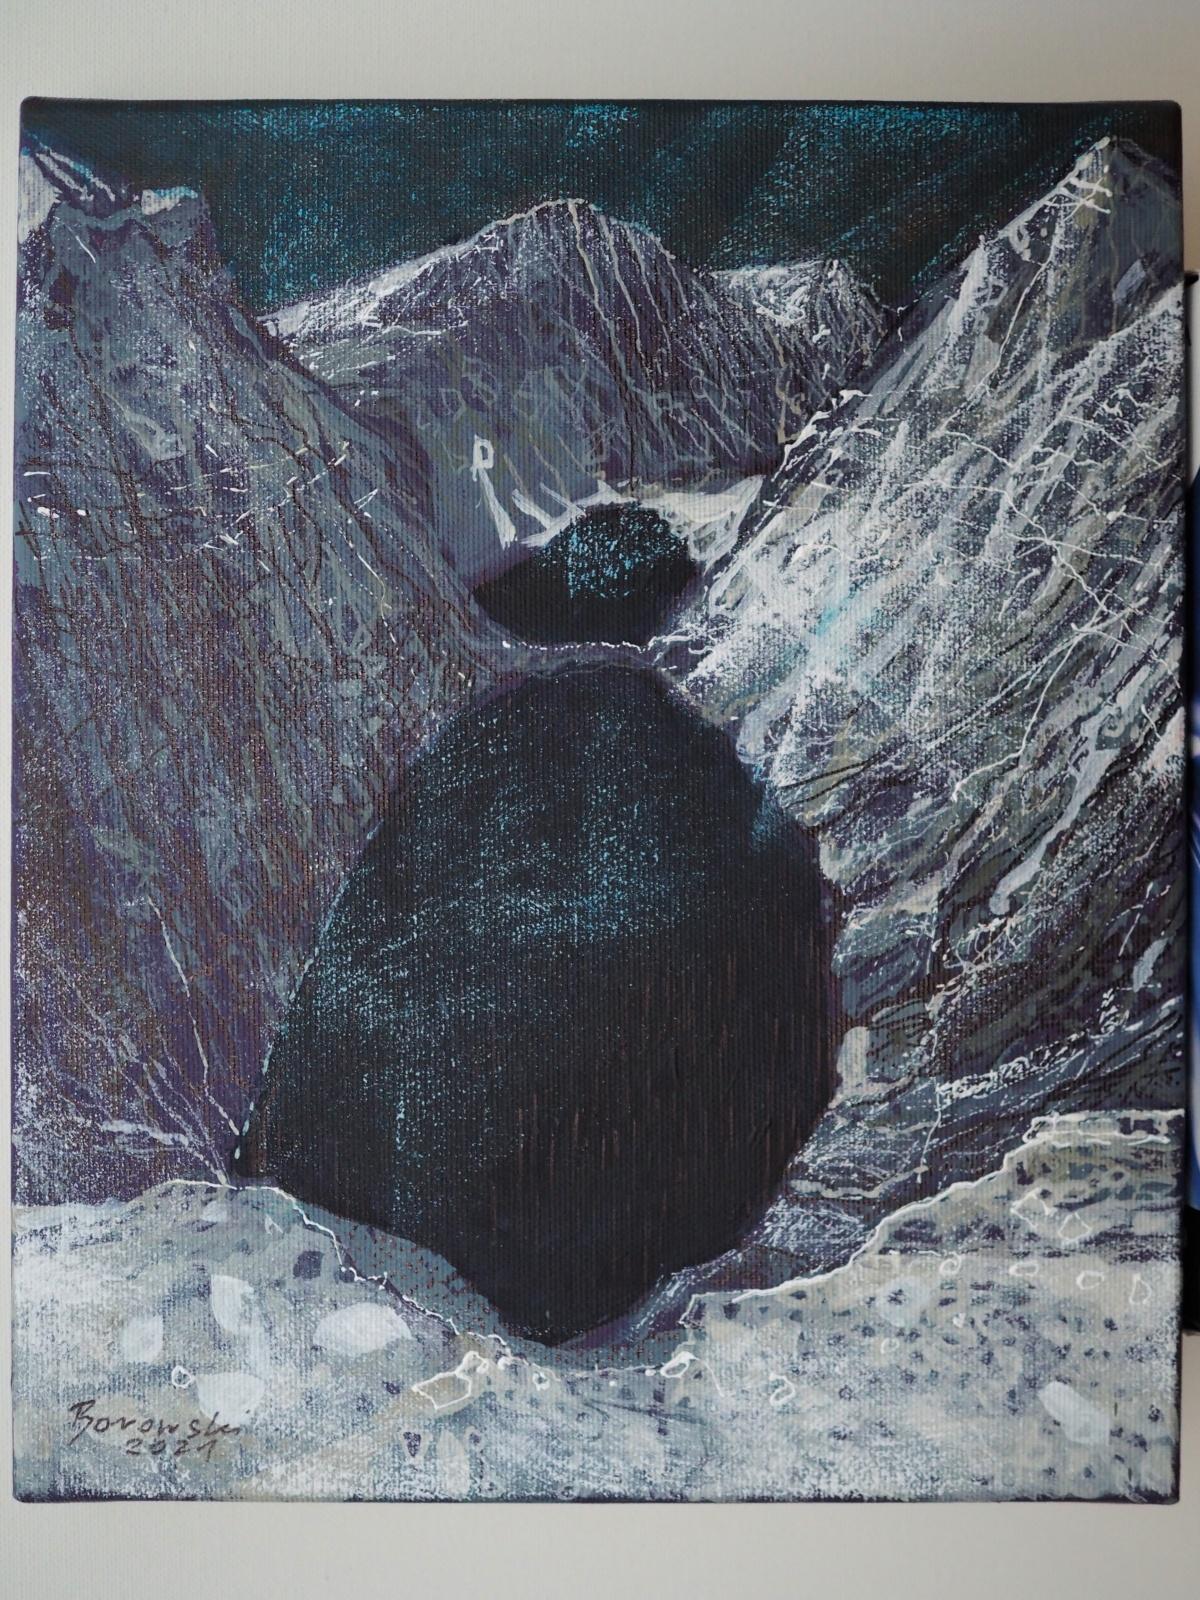 Schwarzer See – 21. Jahrhundert, Zeitgenössische Berge, Acrylgemälde – Painting von Andrzej Borowski